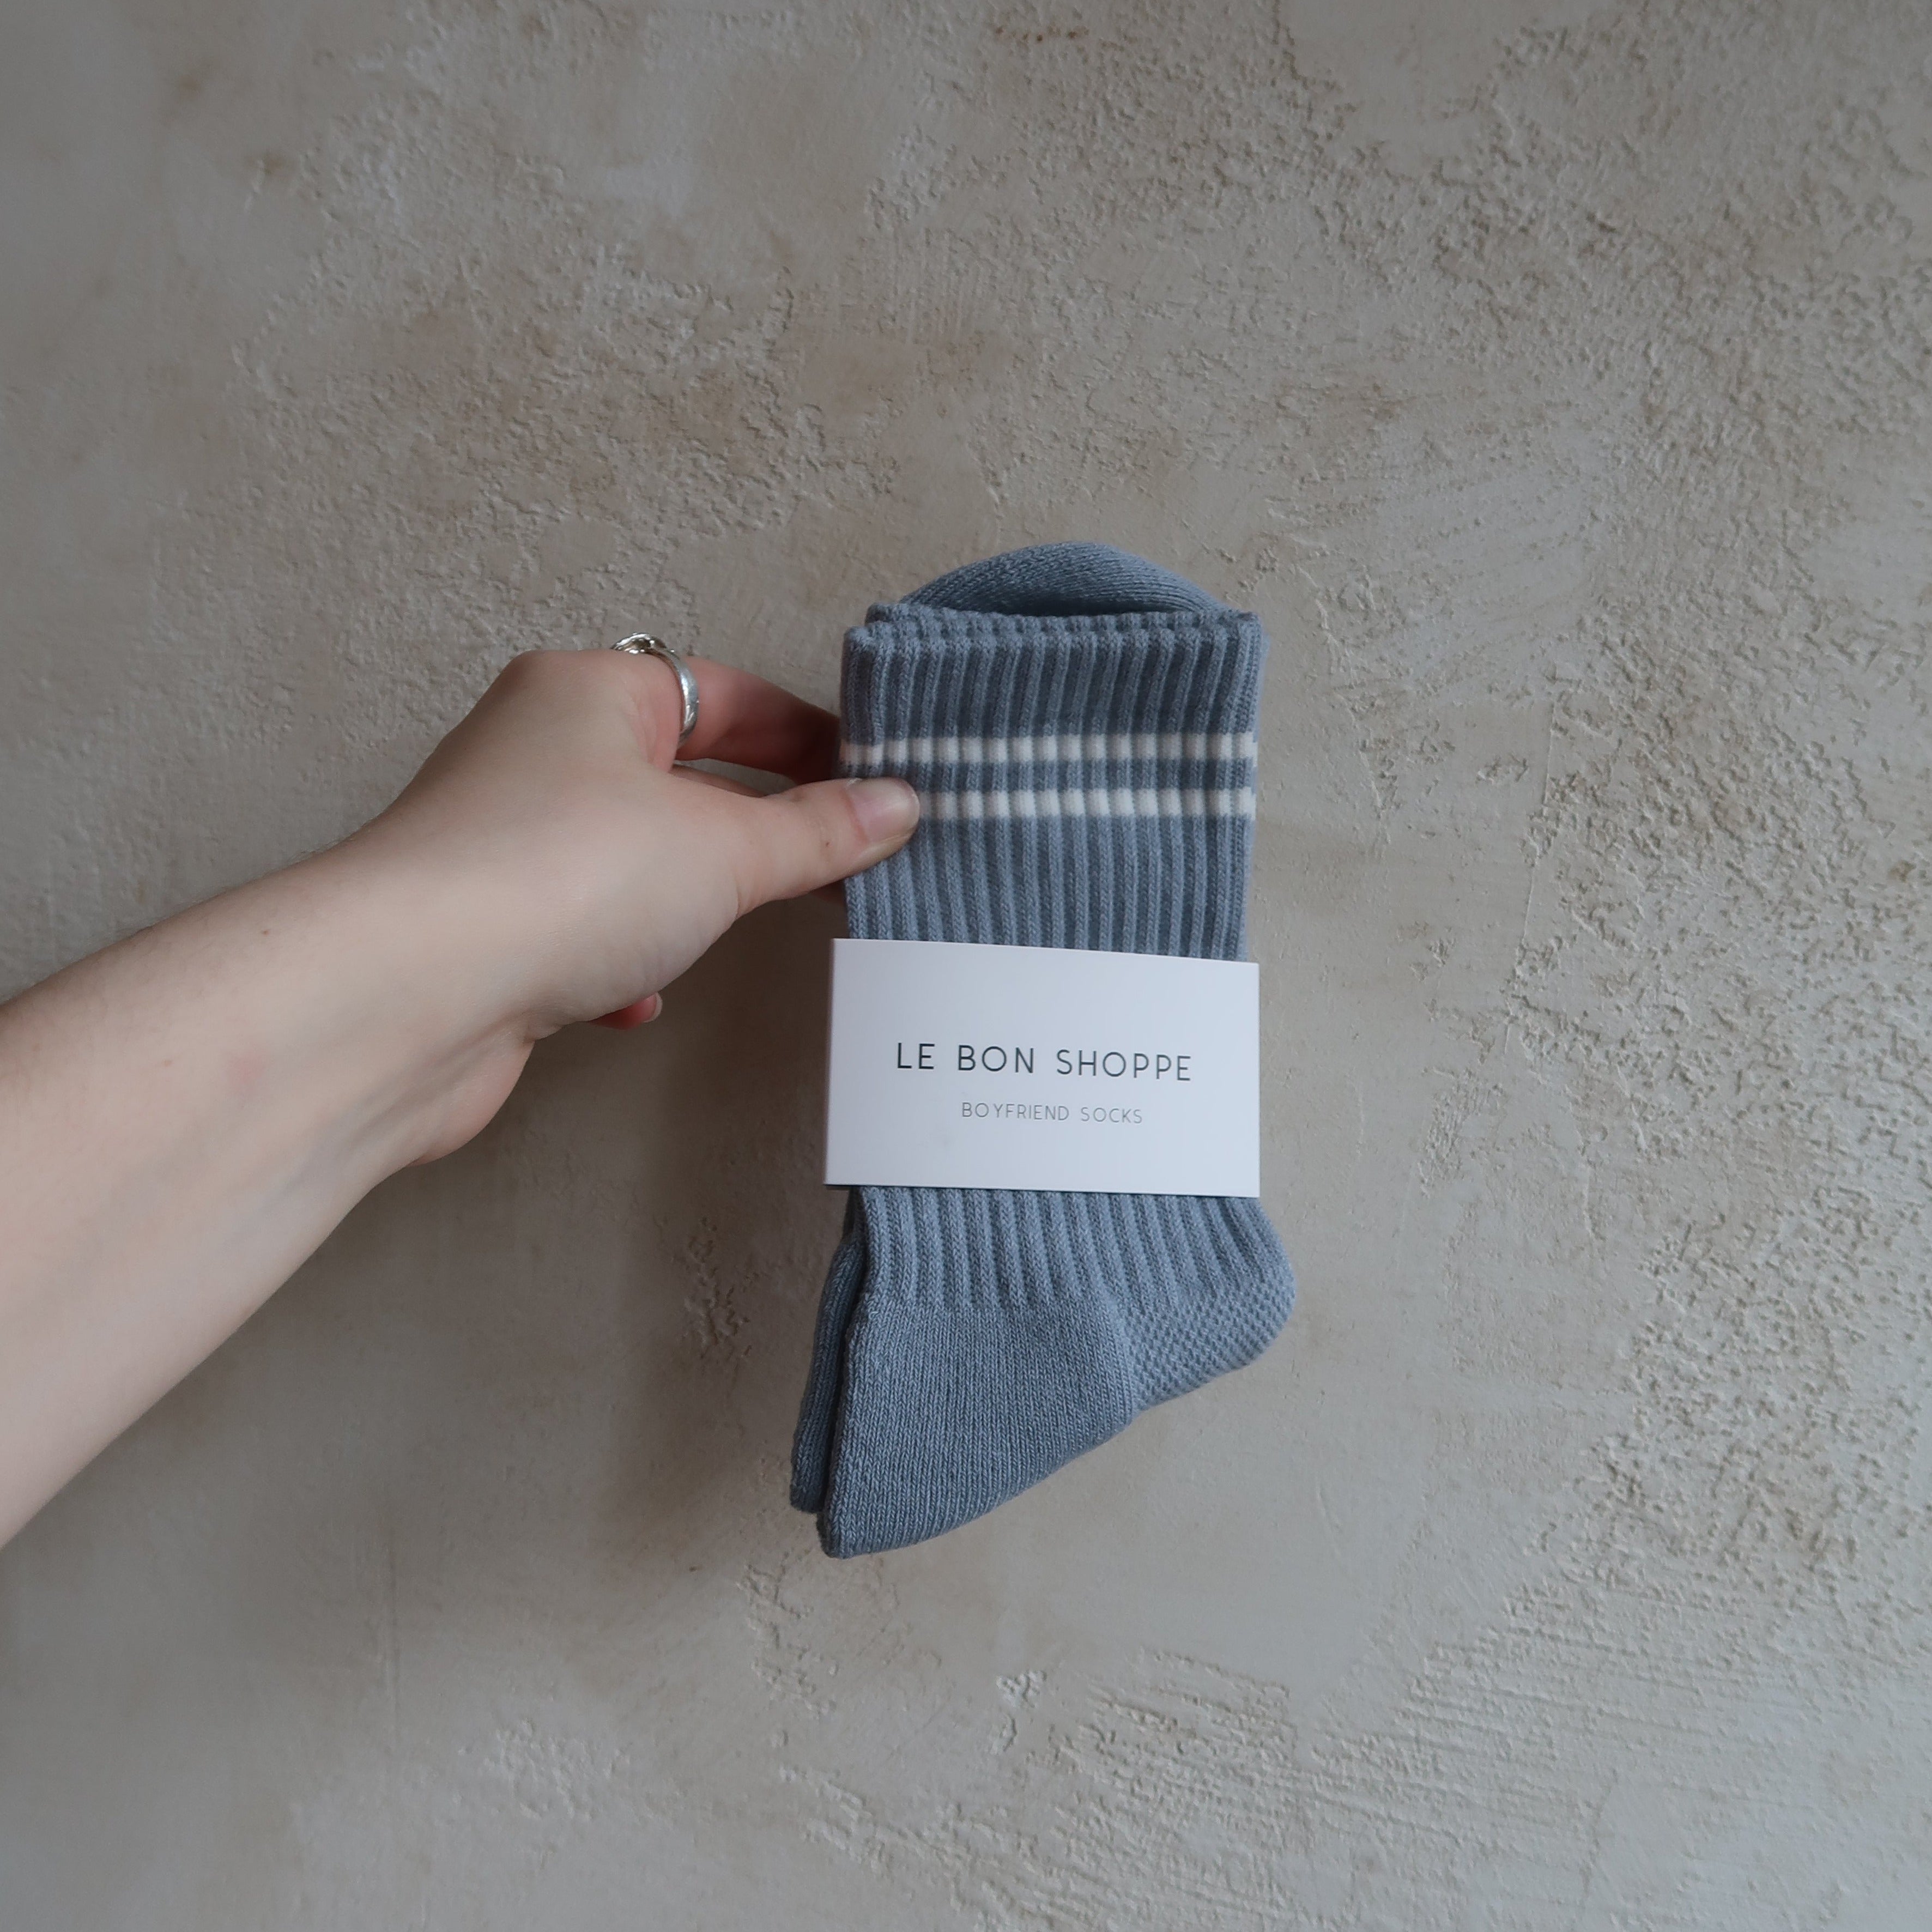 Boyfriend Socks in Blue Grey by Le Bon Shoppe